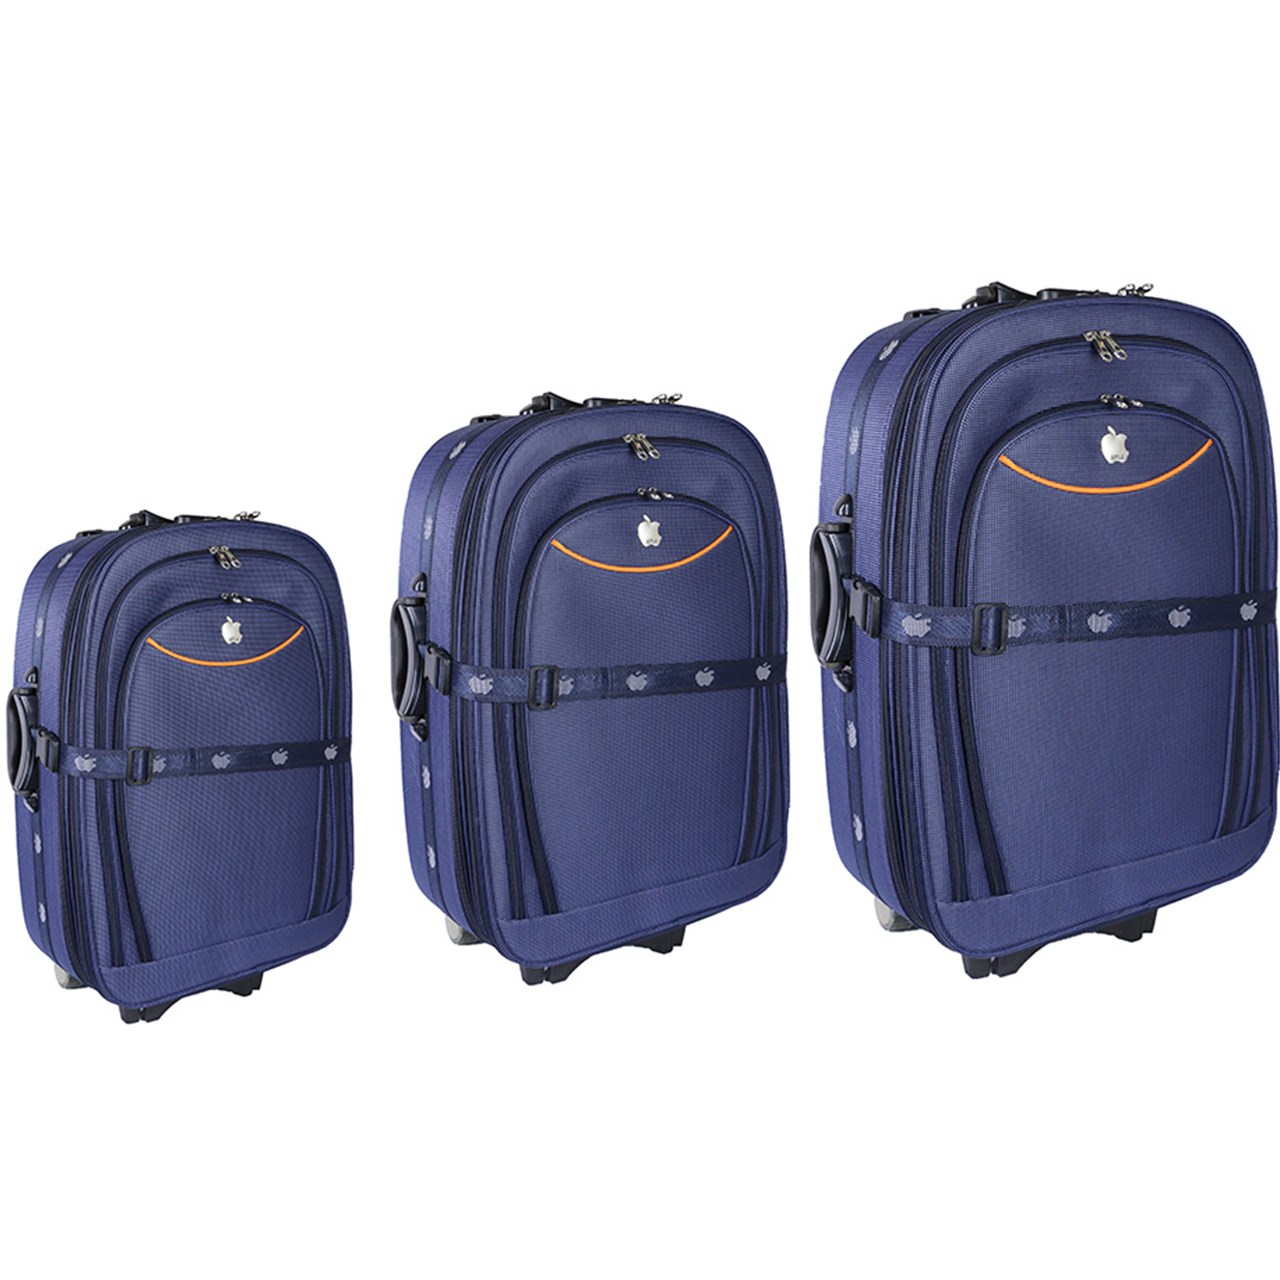 مجموعه سه عددی چمدان مدل M2